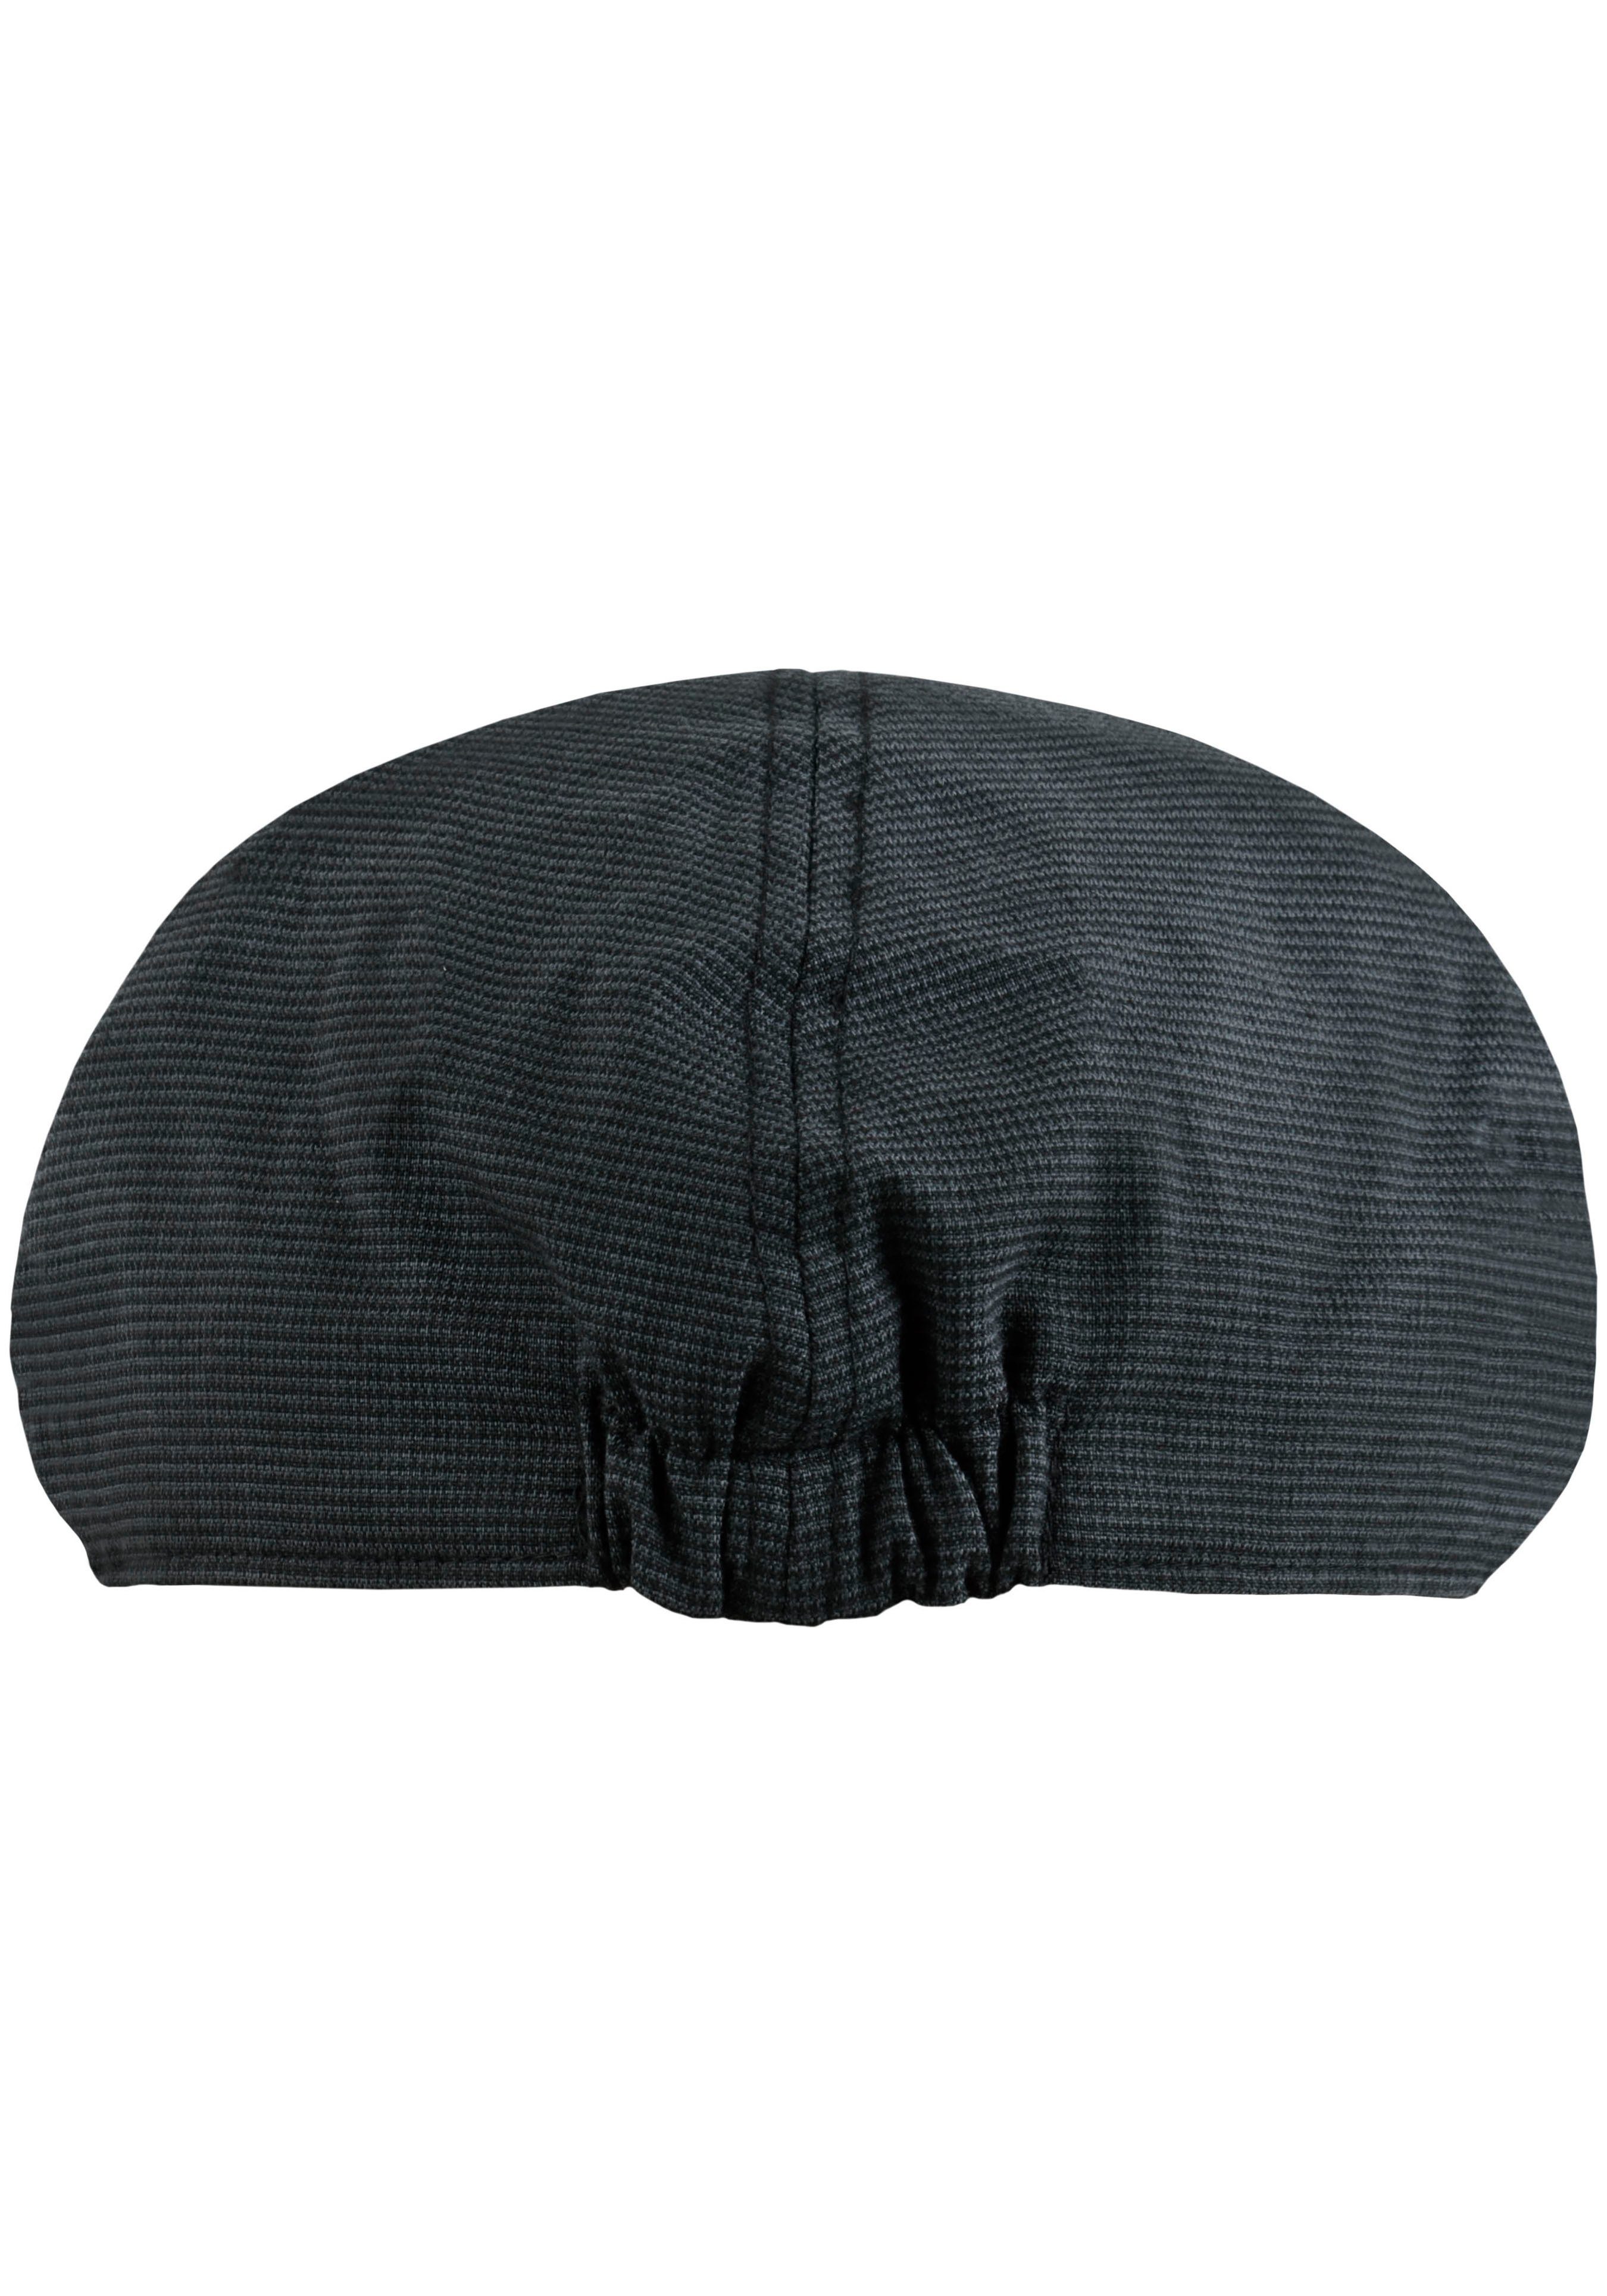 chillouts Schiebermütze Kyoto mit Karomuster grau-schwarz feinem Hat Cap Flat